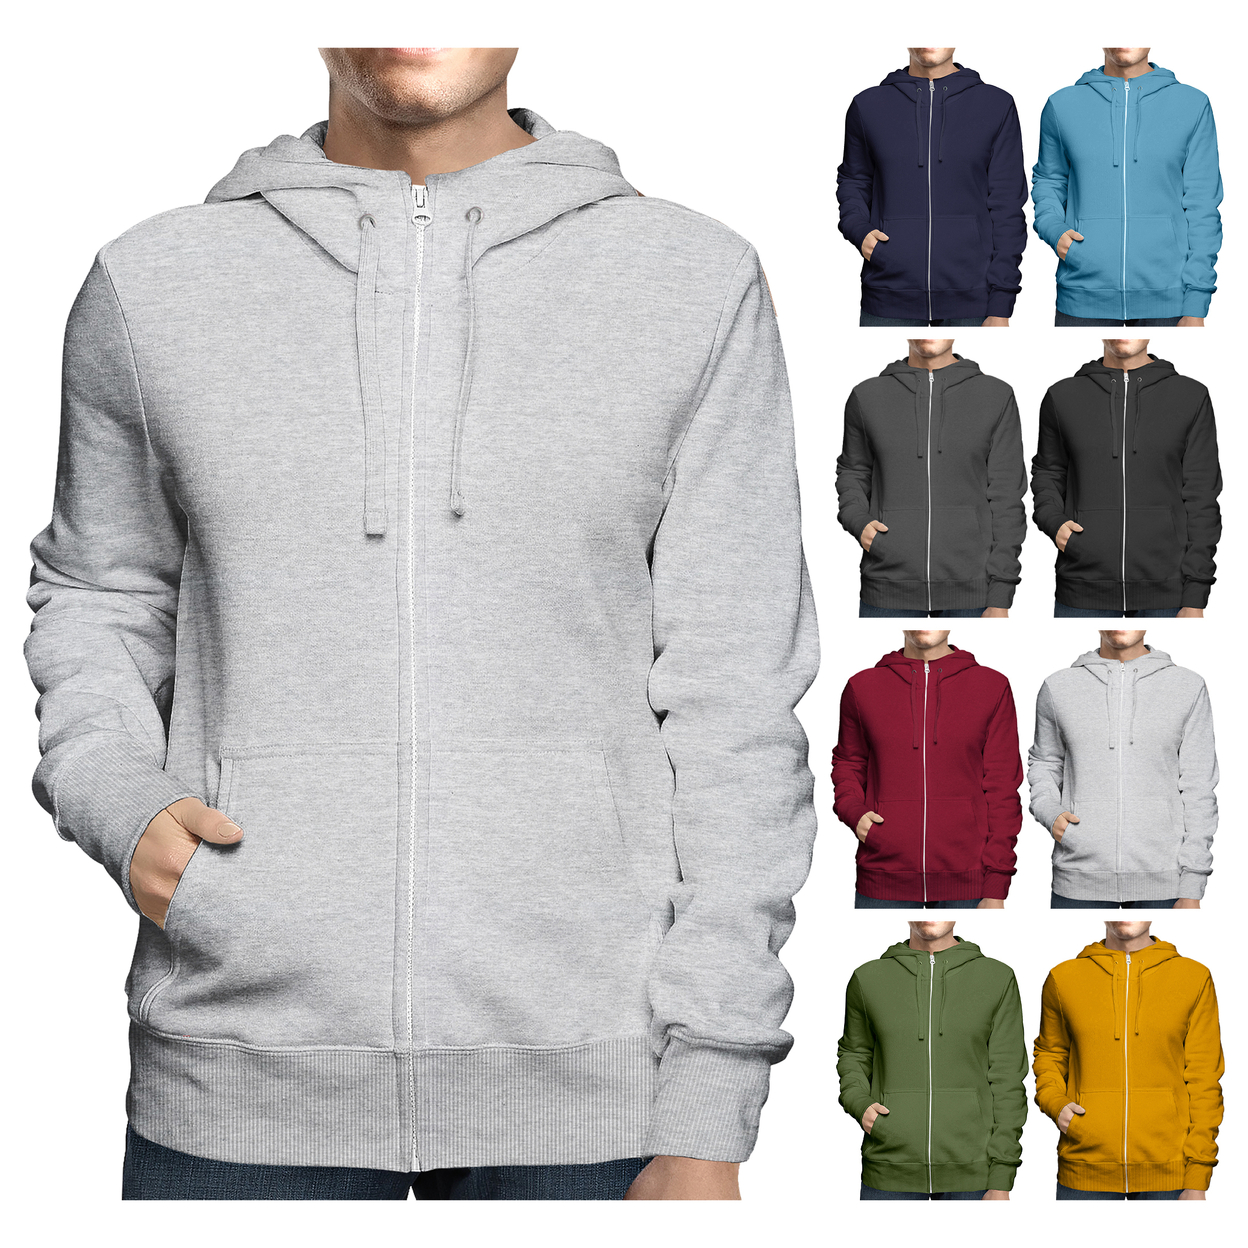 2-Pack: Men's Winter Warm Soft Full Zip-Up Fleece Lined Hoodie Sweatshirt - Black & Charcoal, Xx-large